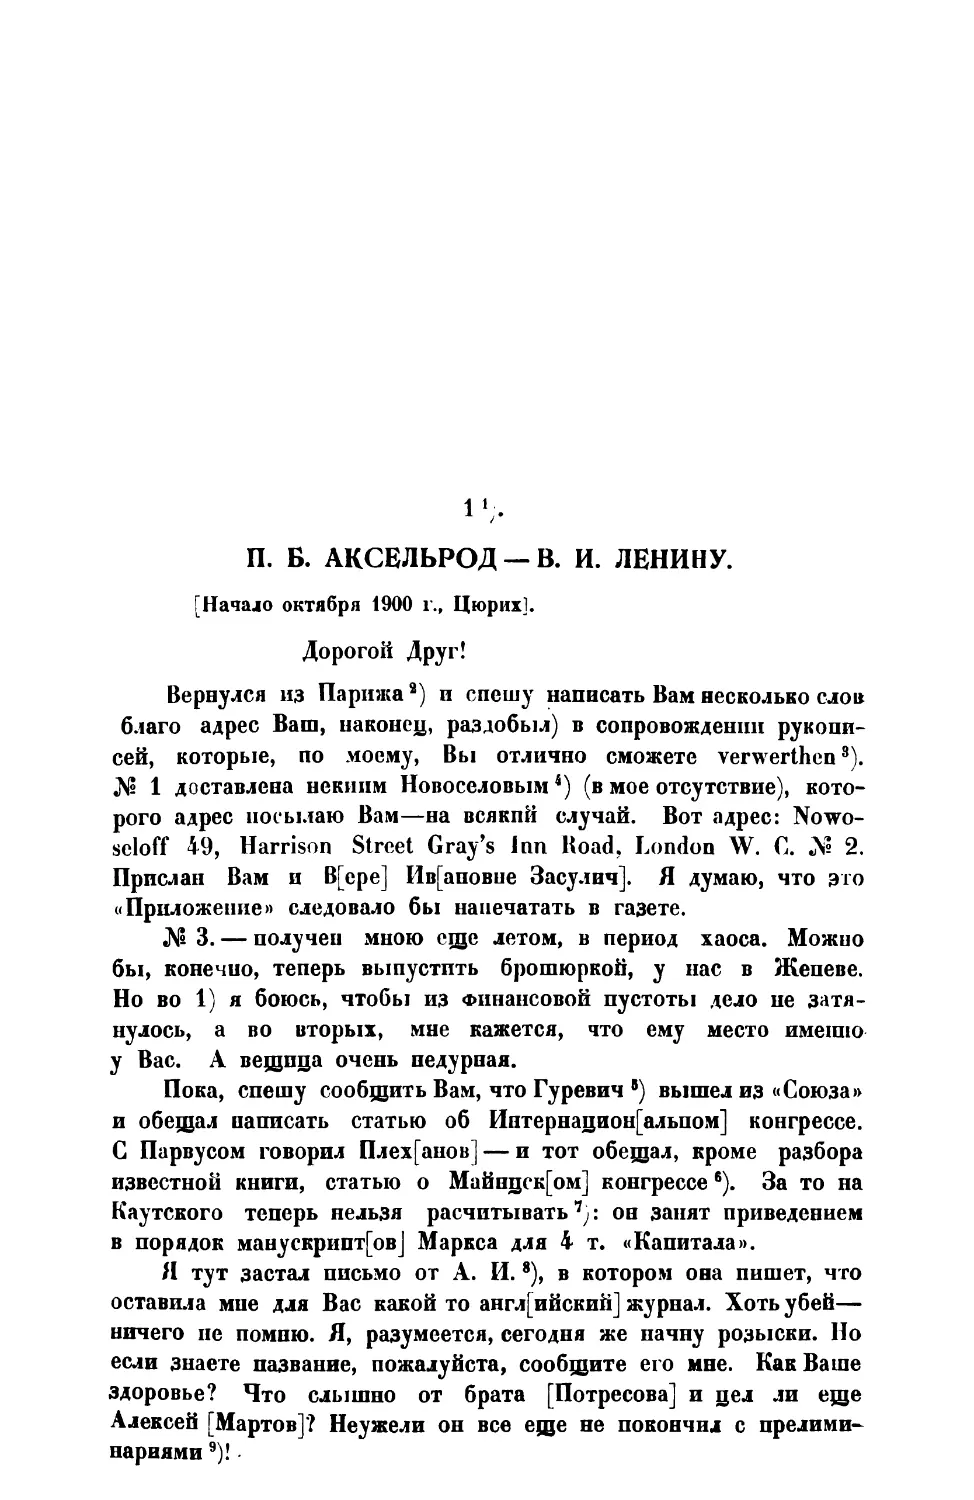 1. П. Б. Аксельрод. — Письмо В. И. Ленину — начало октября 1900 г.